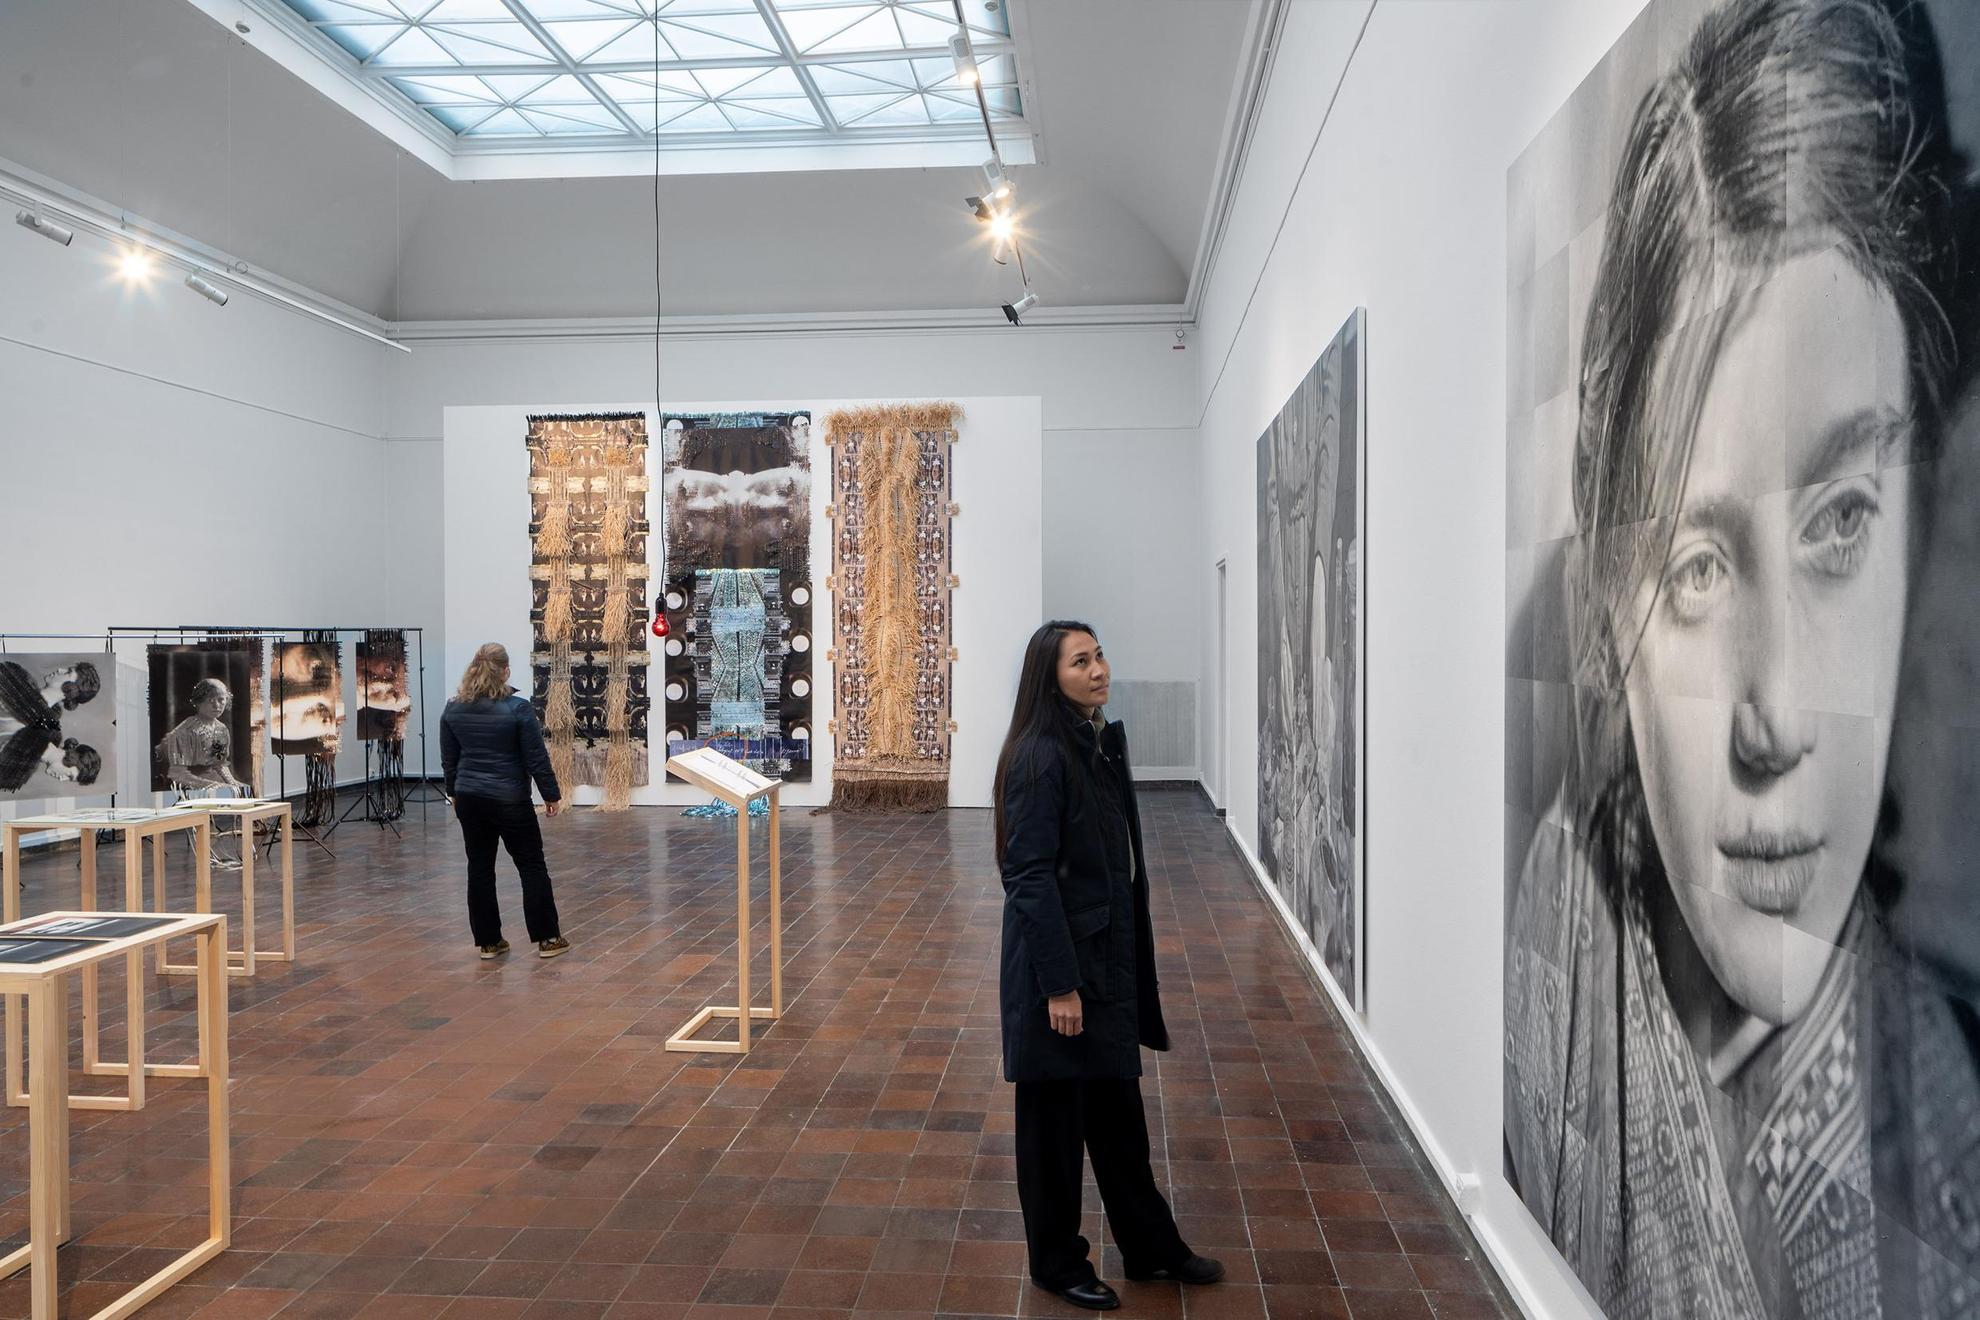 Eine Installation in einer Ausstellung. Eine Frau betrachtet ein großes Schwarz-Weiß-Bild einer Frau und im Hintergrund betrachtet eine weitere Frau ein großes Kunstwerk mit Fotografien, die mit Fragmenten zu neuen Strukturen verflochten sind.